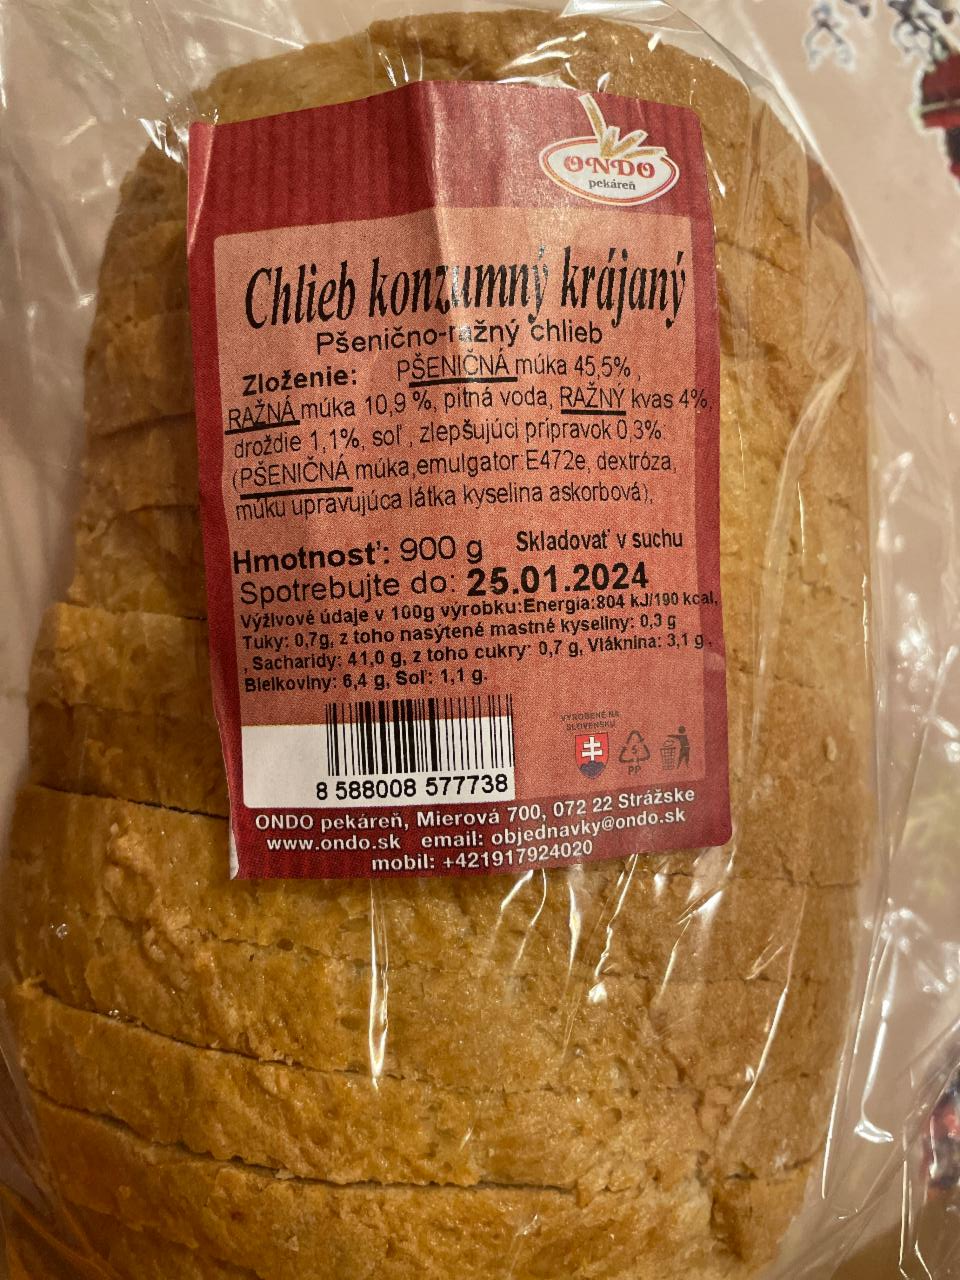 Fotografie - Chlieb konzumný krájaný Ondo